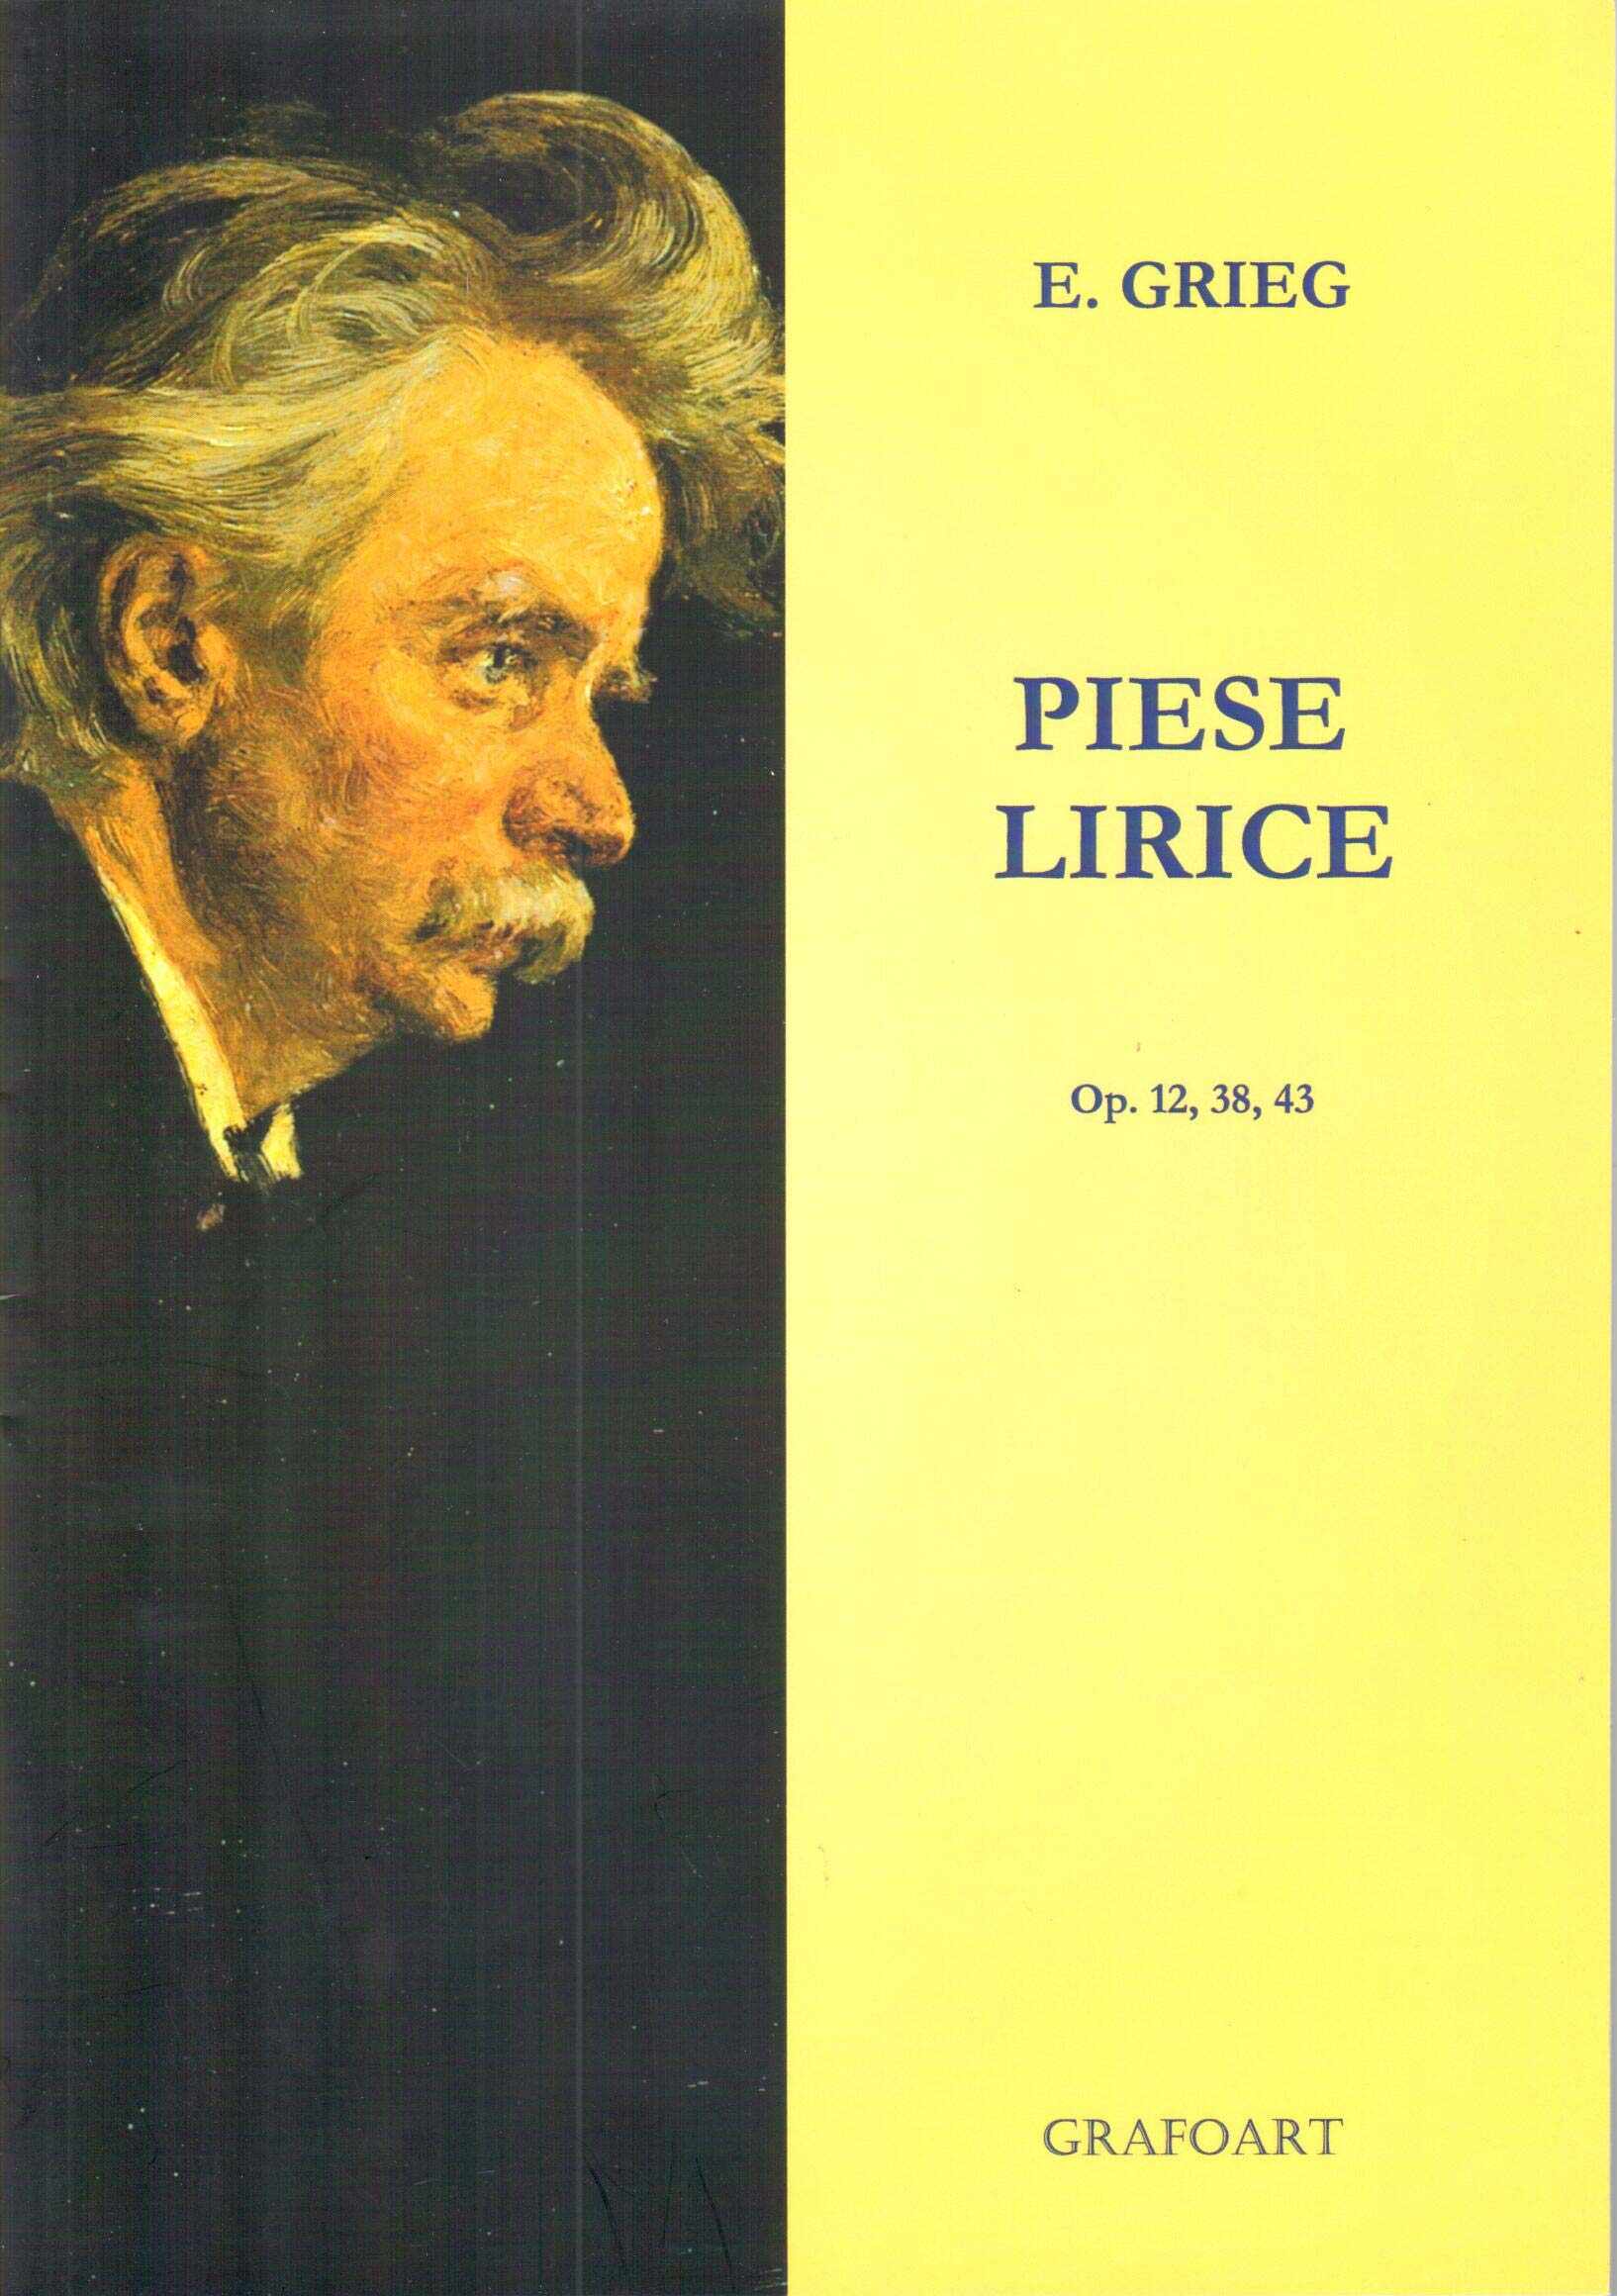 Piese lirice - Op. 12, 38, 43 | E. Grieg